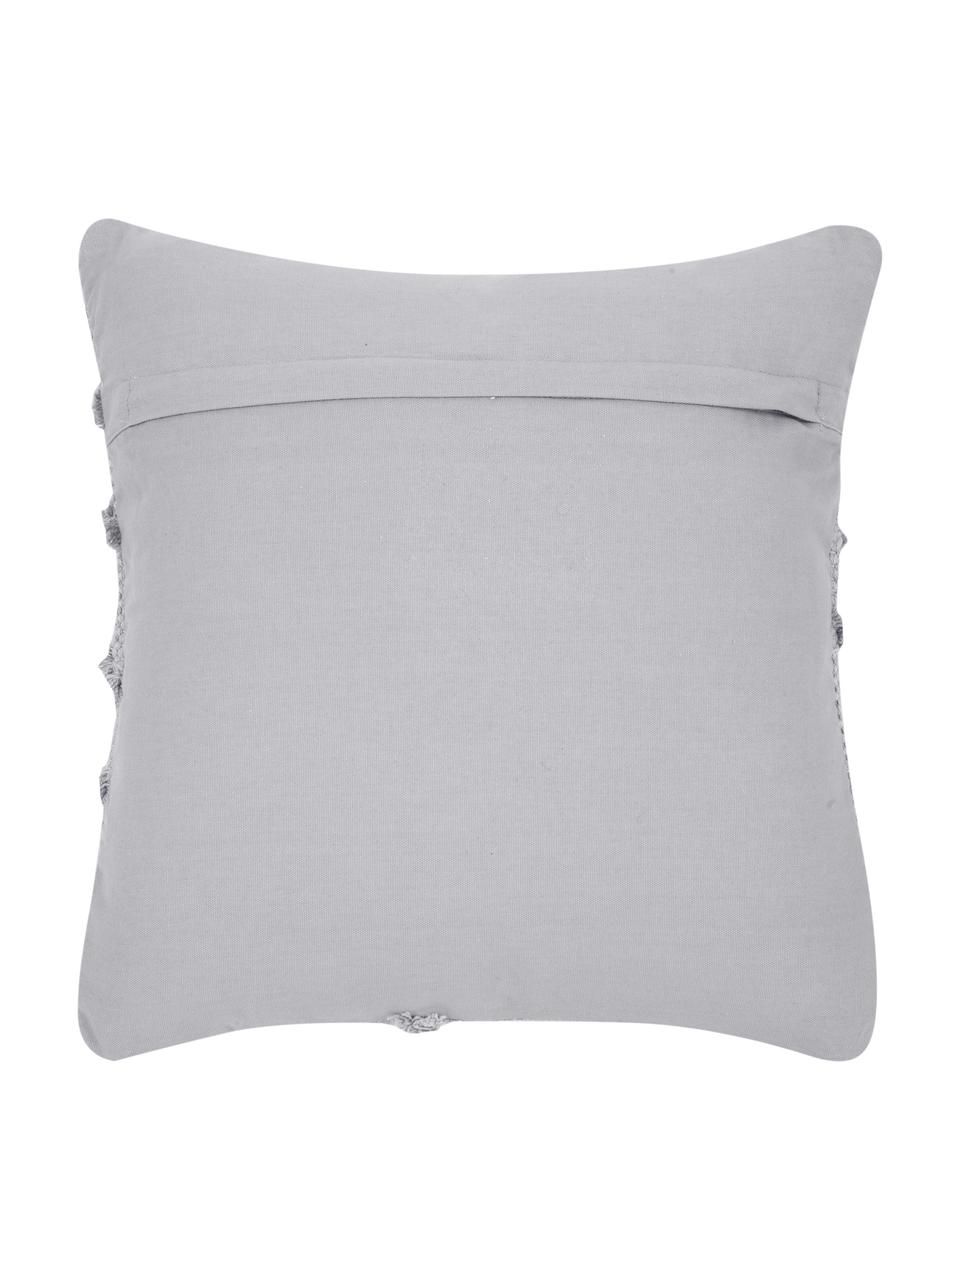 Poszewka na poduszkę w stylu boho Akesha, 100% bawełna, Szary, S 45 x D 45 cm